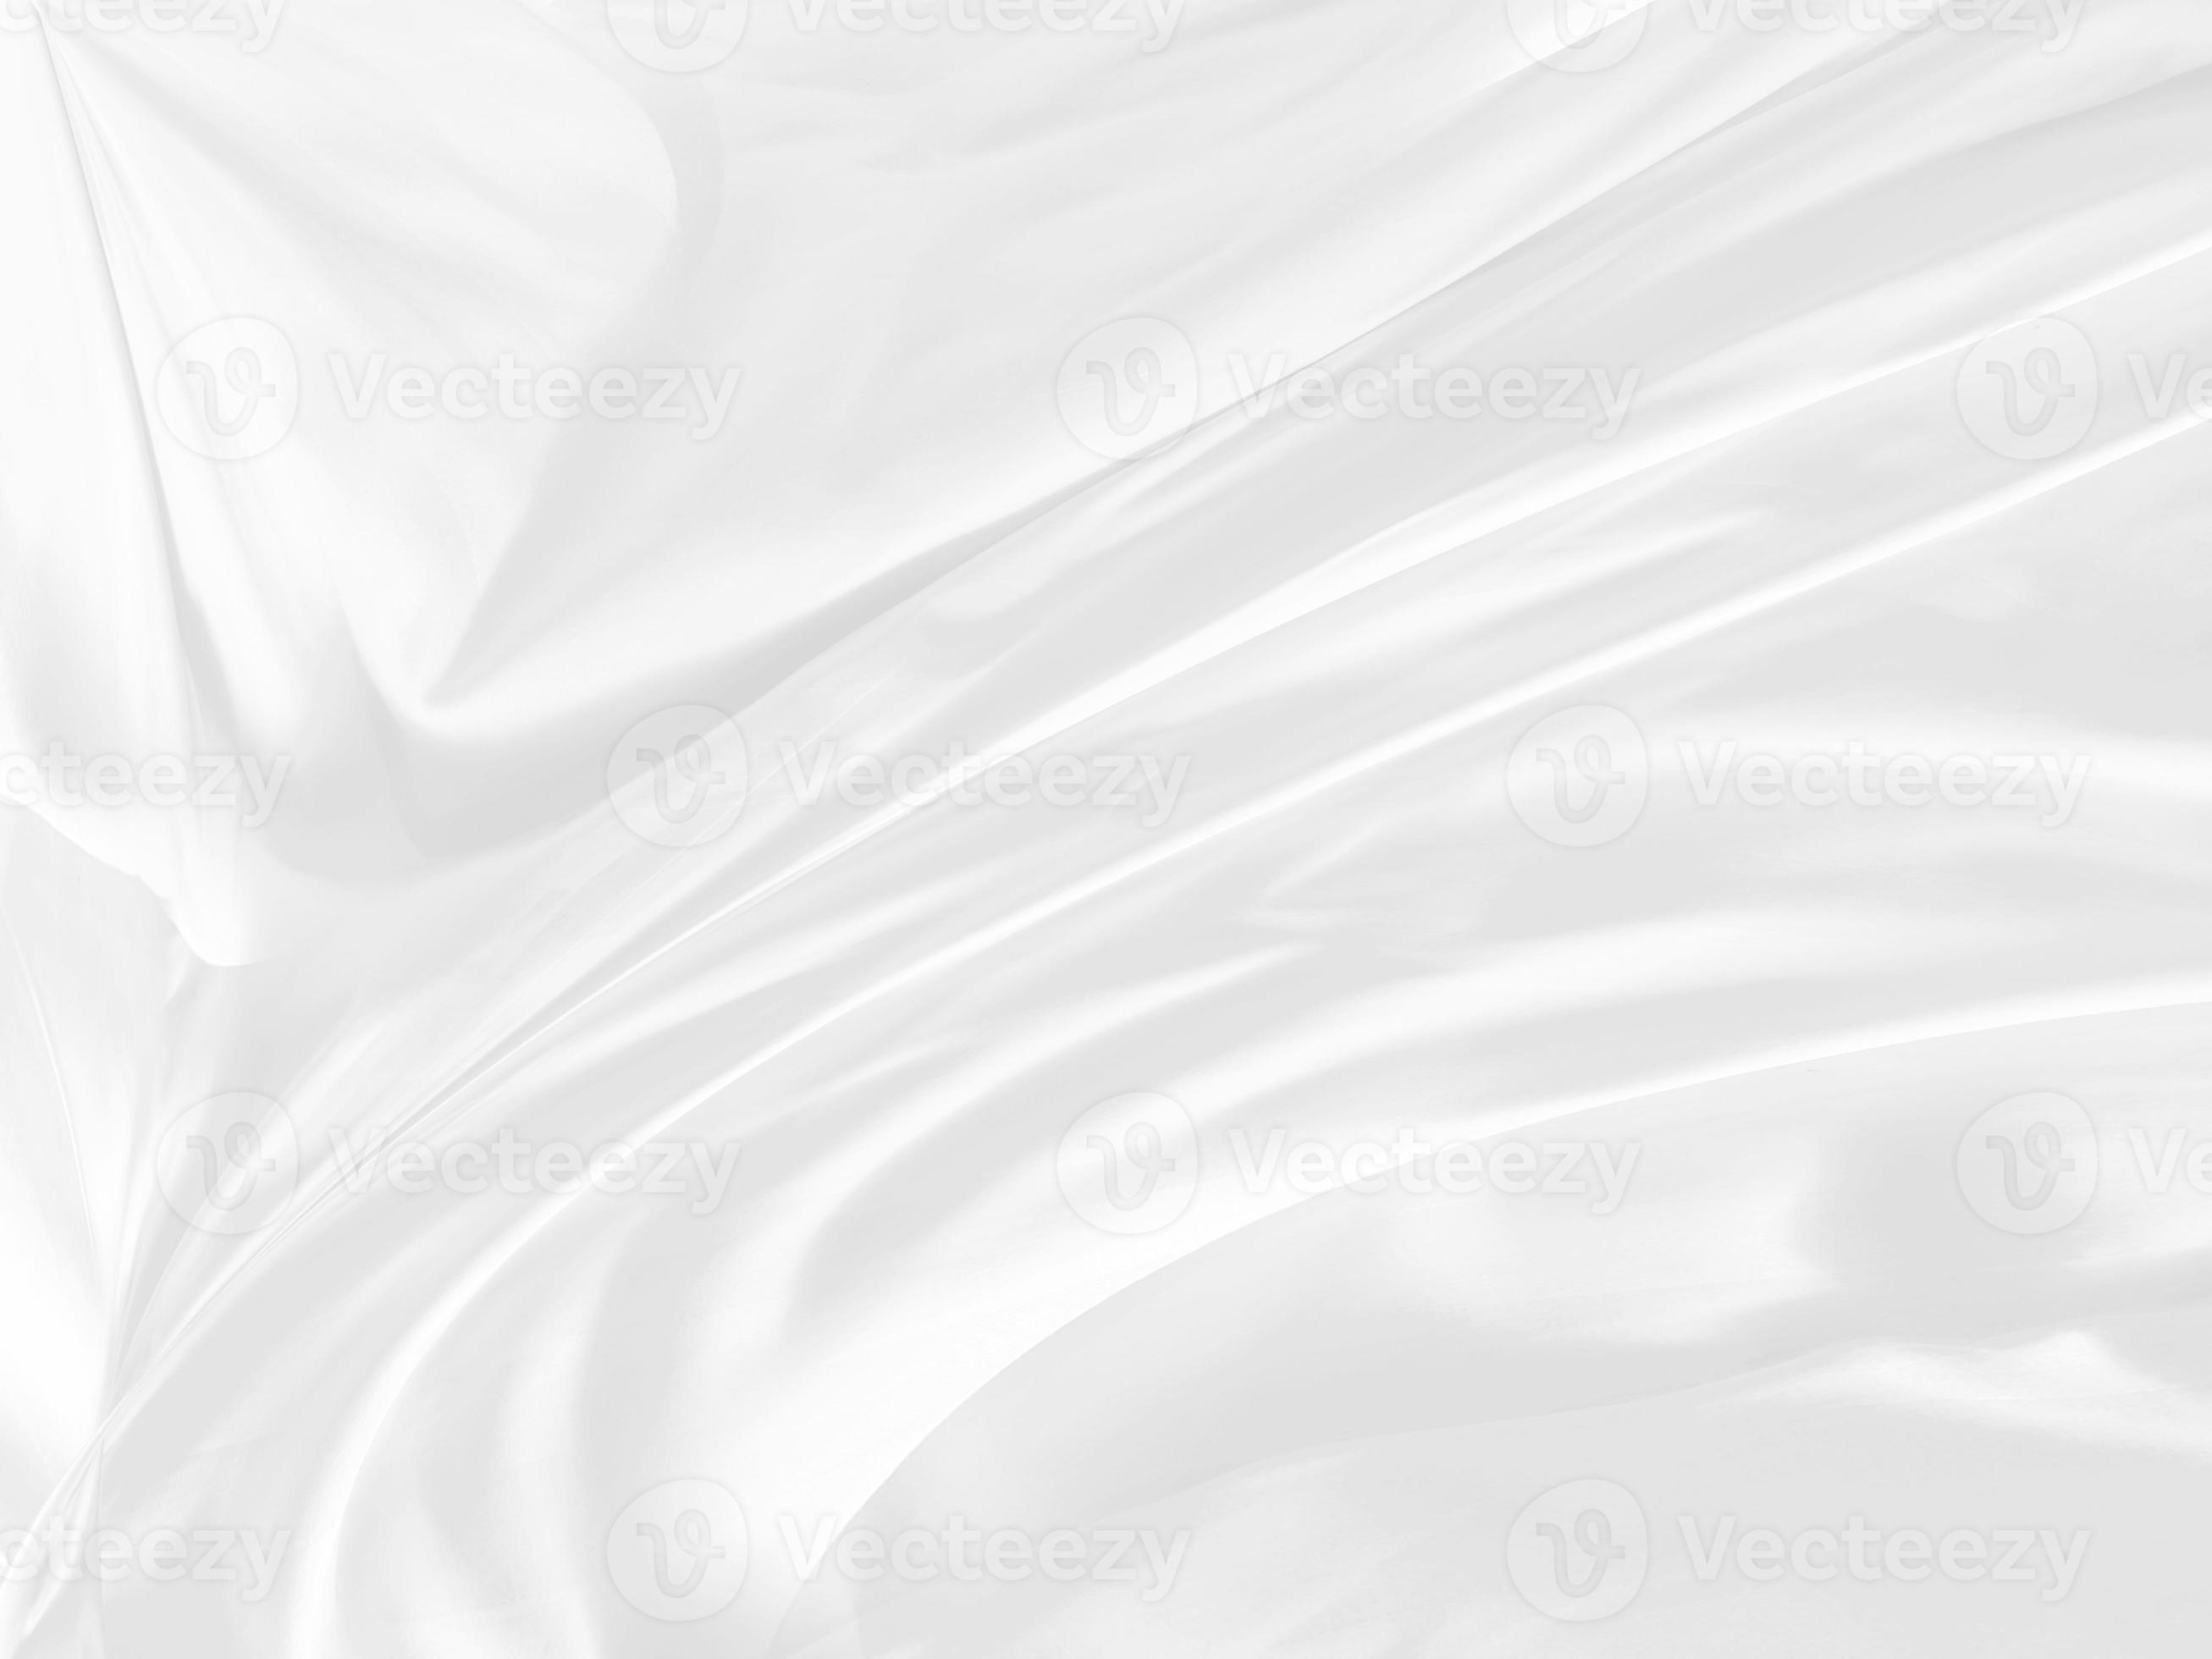 Blokkeren Afbreken wervelkolom schoonheid wit glad abstract schoon en zacht kleding stof getextureerd.  mode textiel vrij stijl vorm versieren achtergrond 17684249 stockfoto bij  Vecteezy